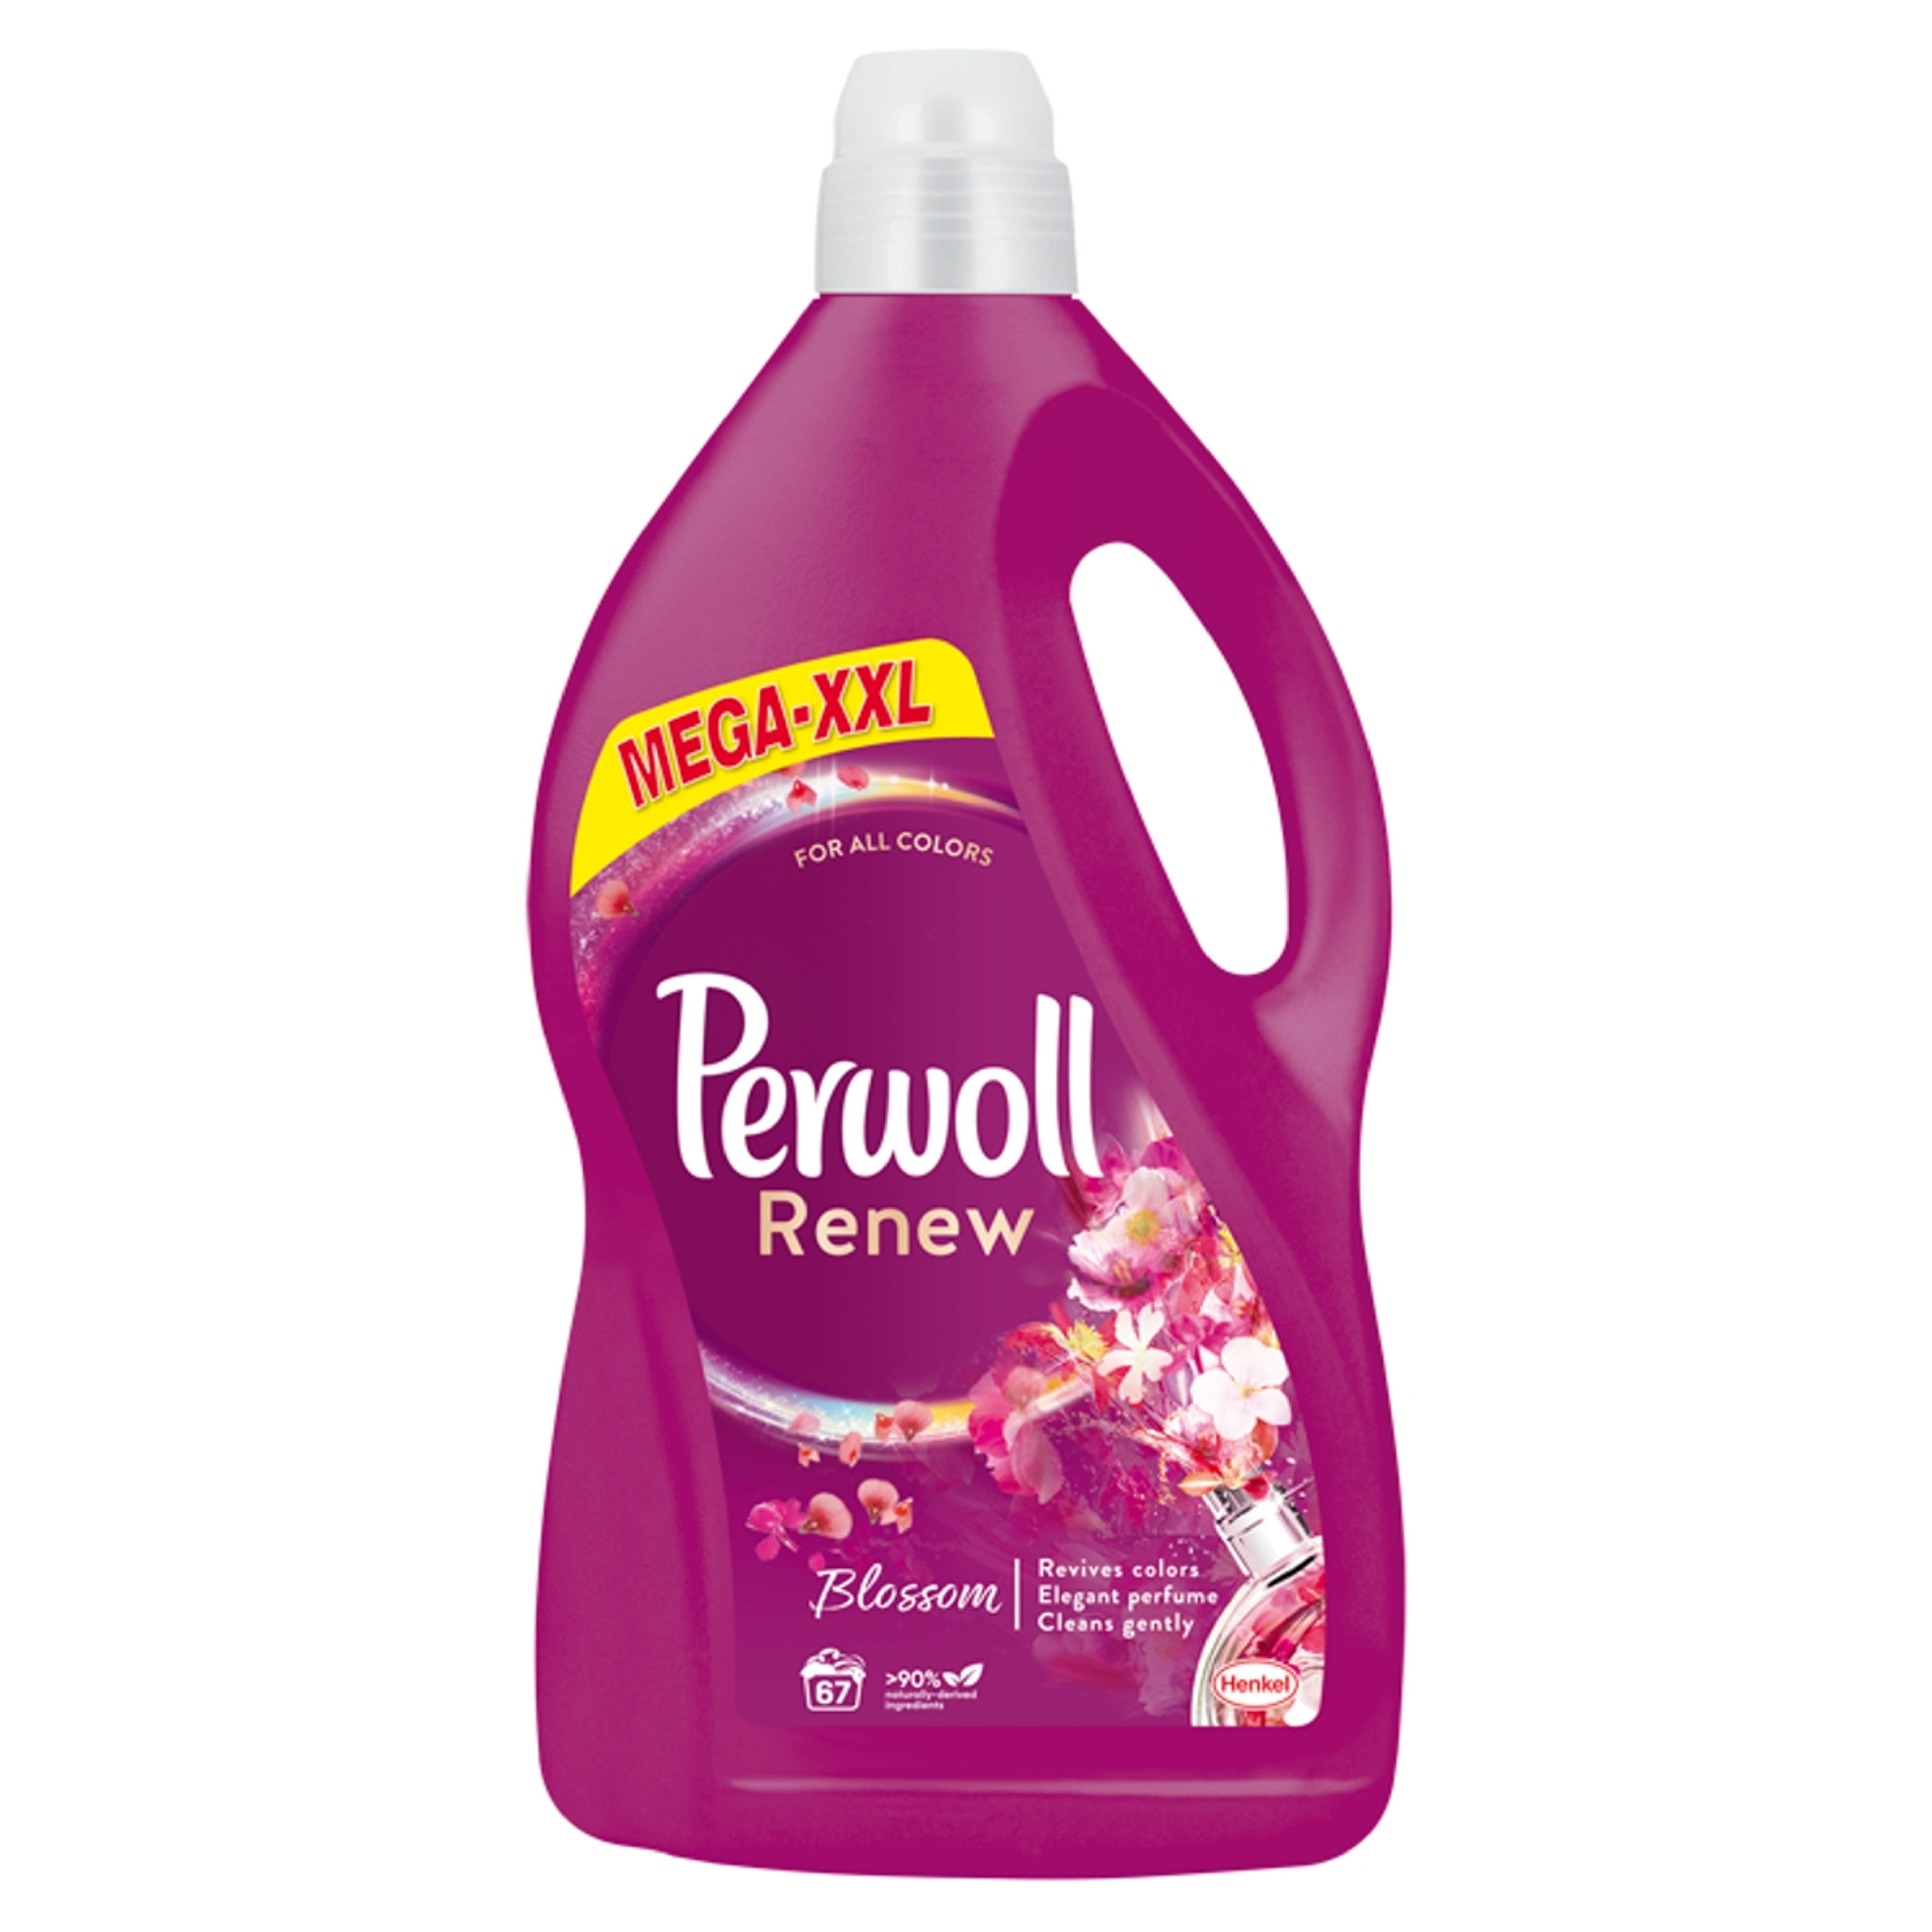 Perwoll Renew&Blossom folyékony mosószer, 67 mosás - 4050 ml-1